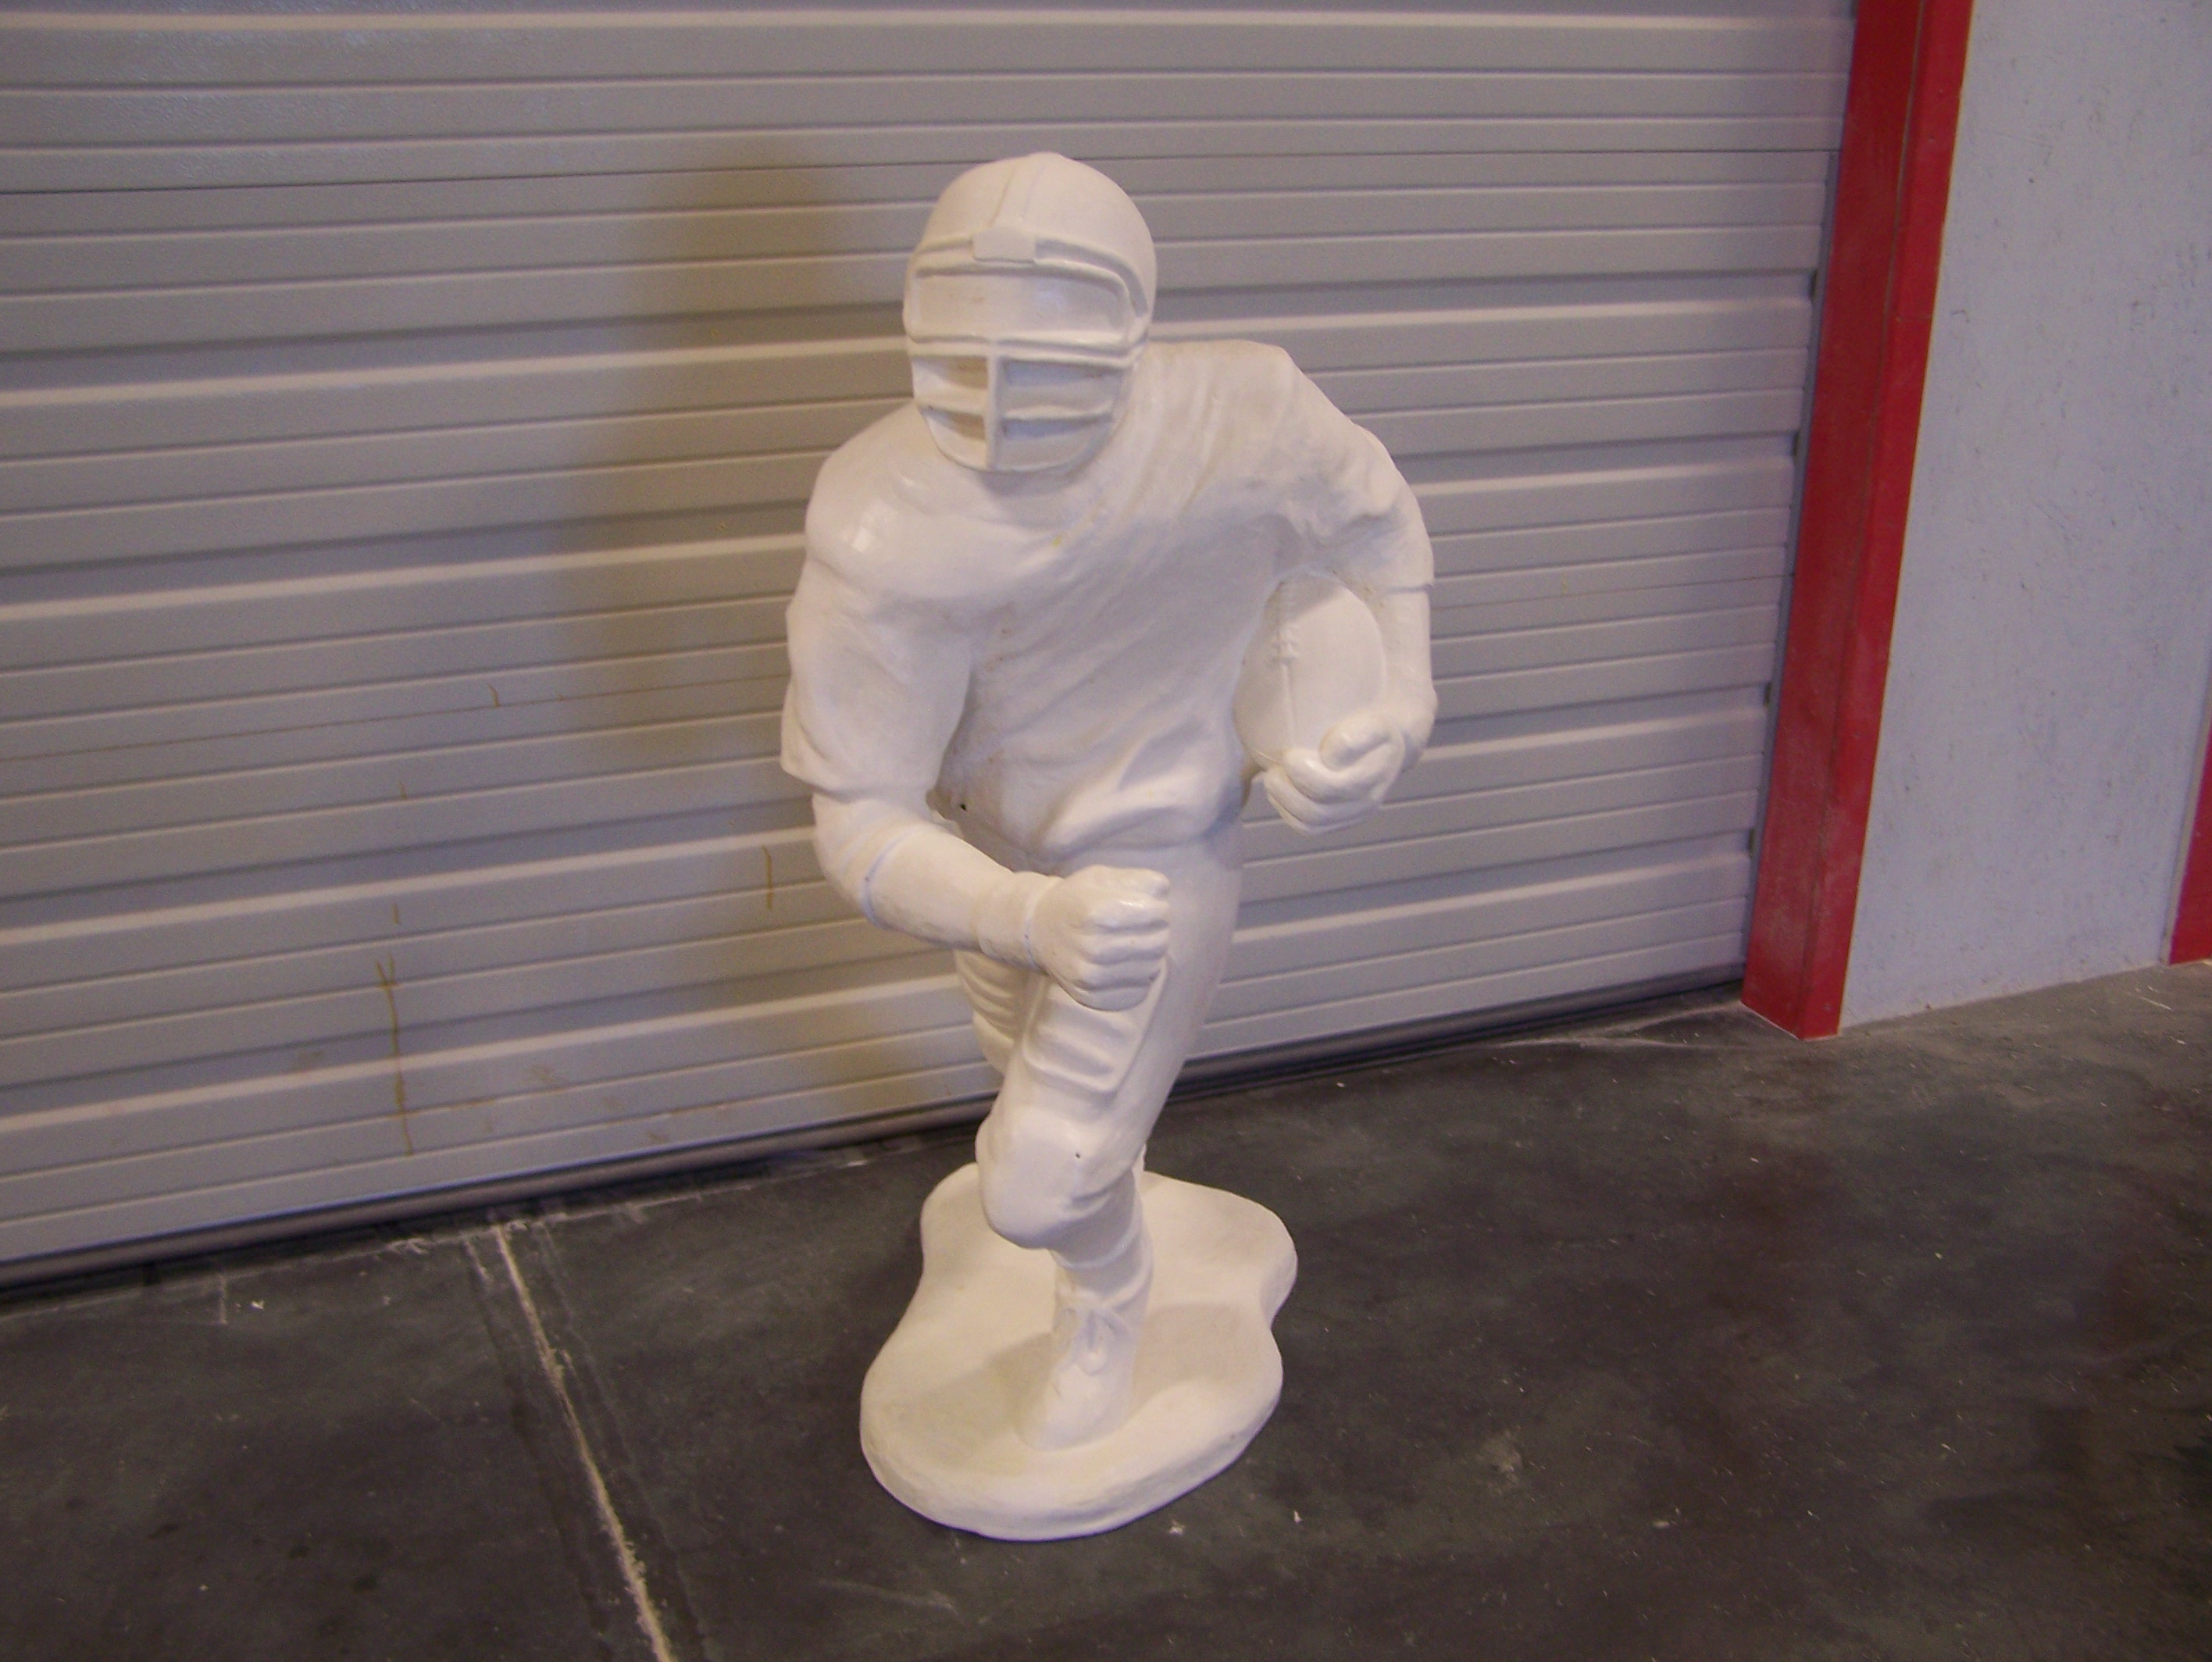 Fiberglass football player for fiberglass art projects